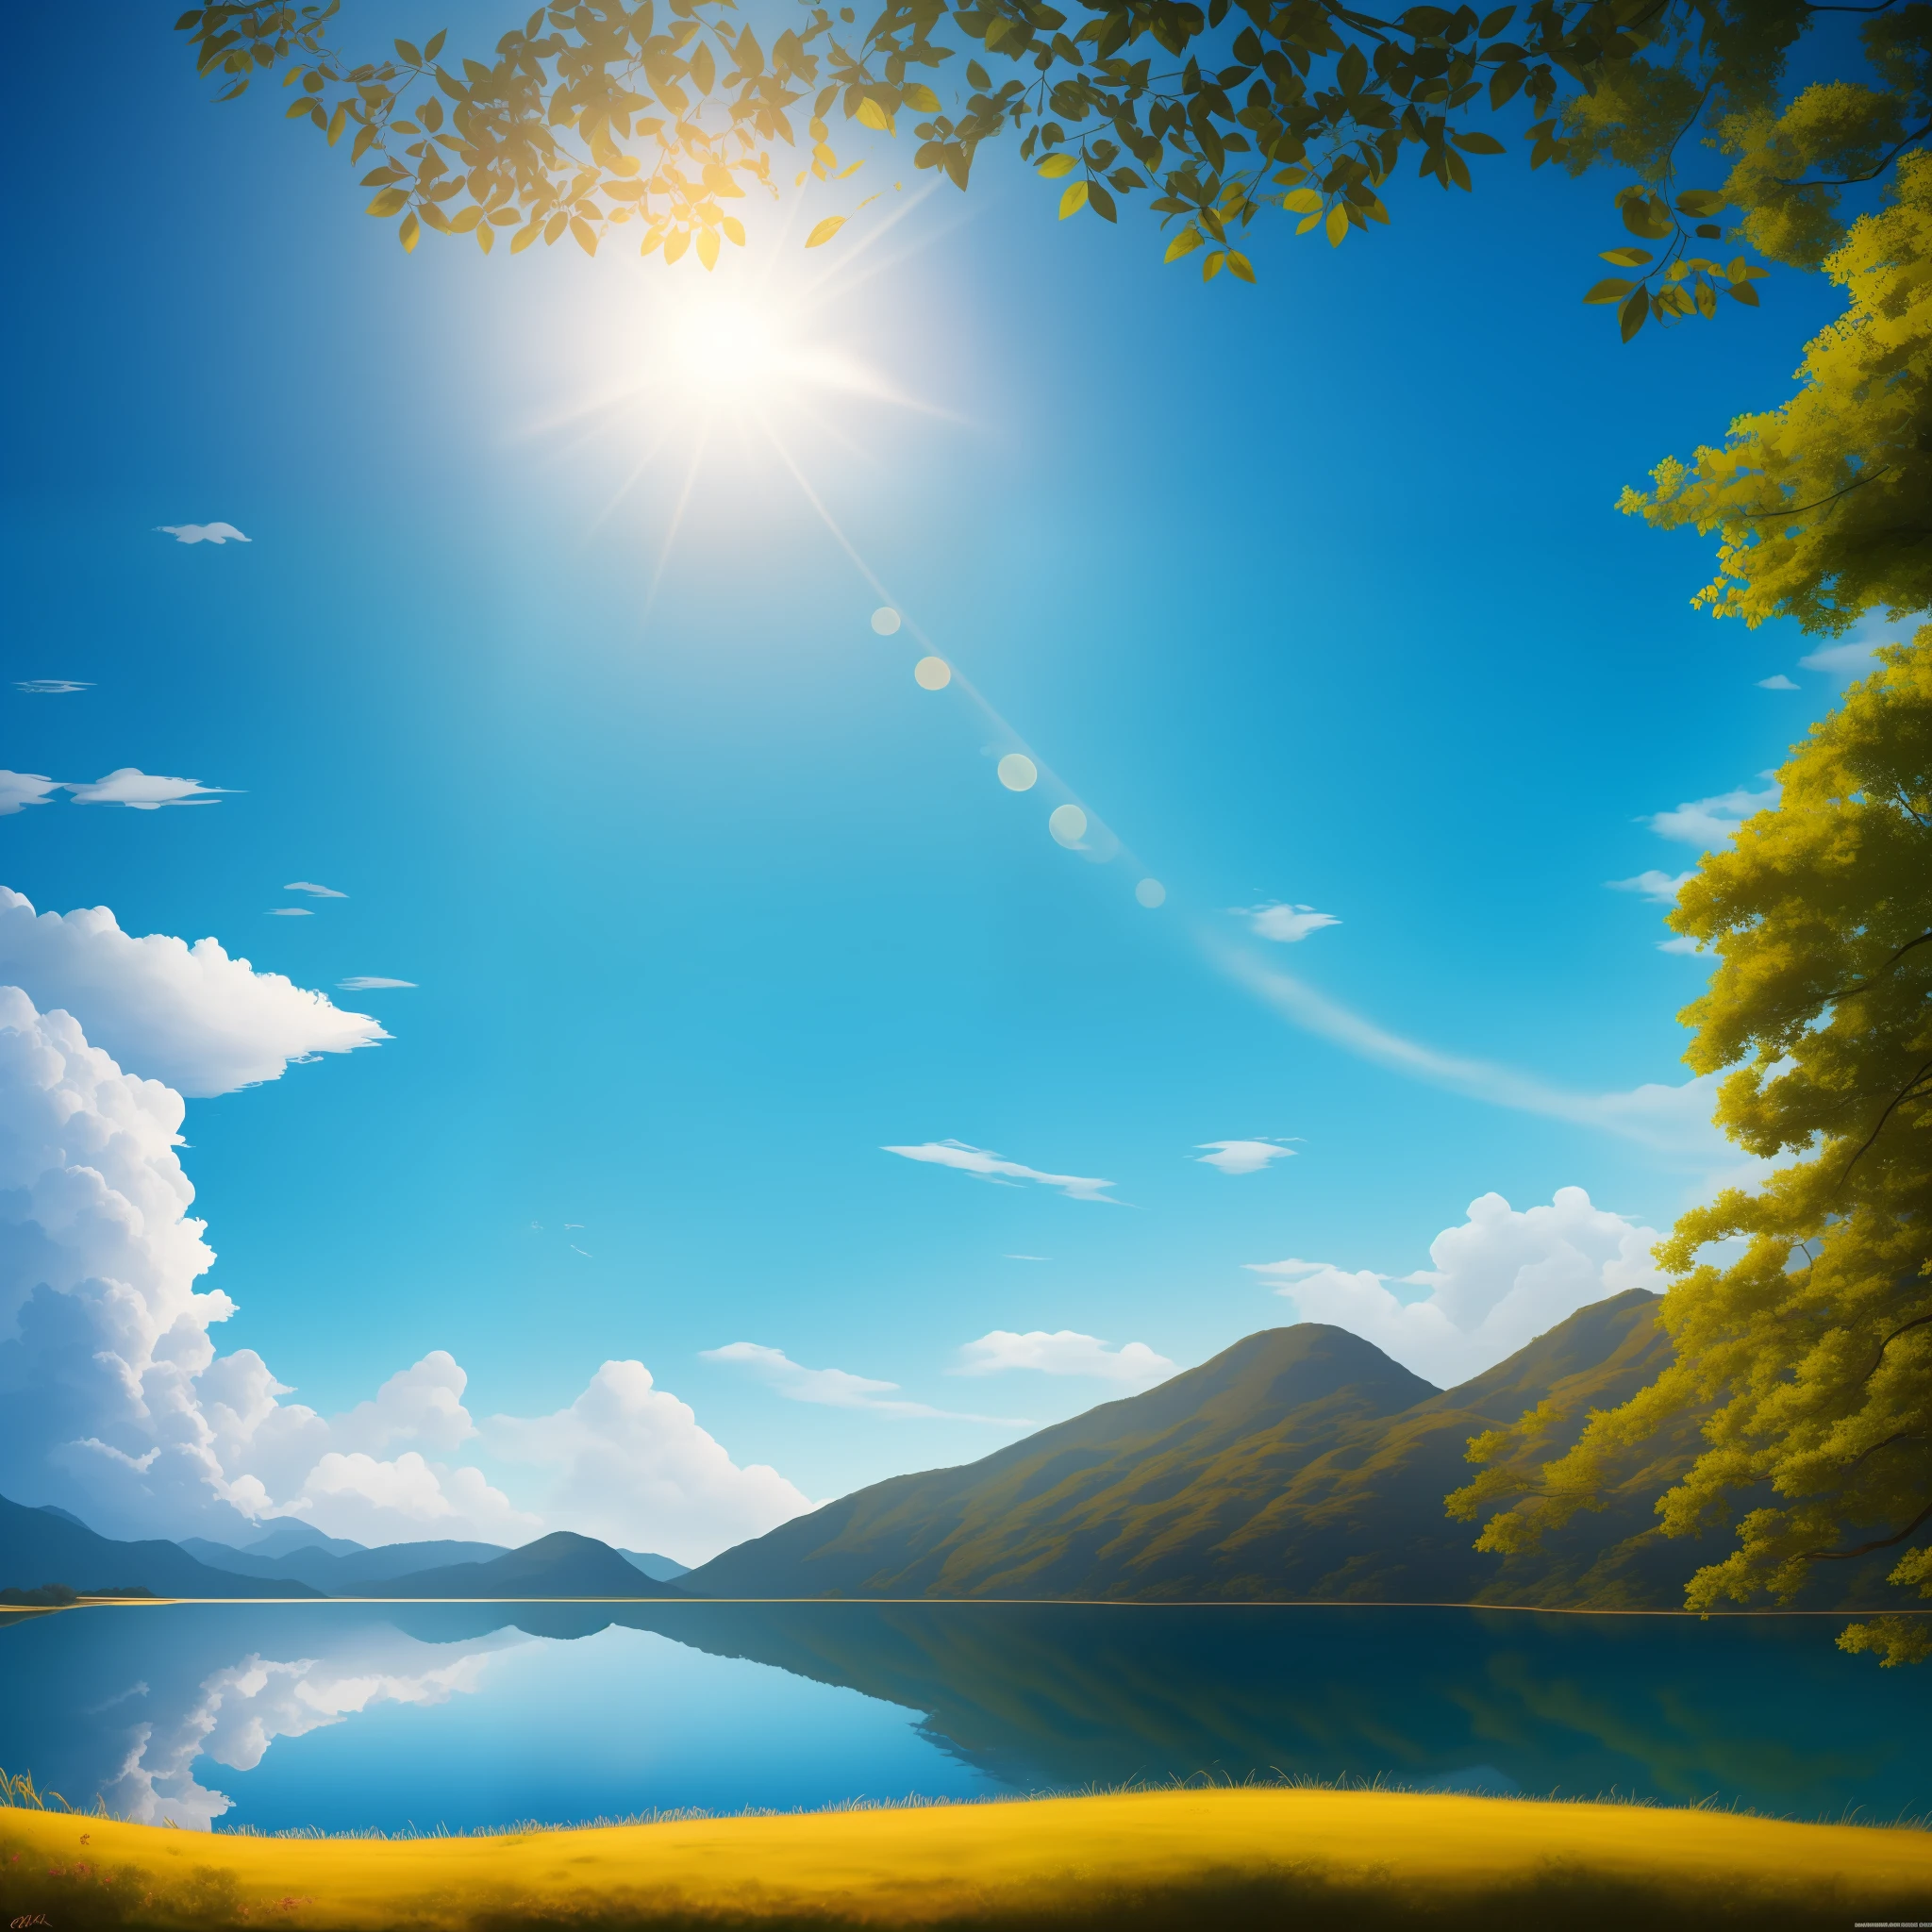 "((傑作)), より良い品質, 超現実的な, 青い空と美しい自然の風景の高解像度 4k 壁紙, 日光, 「おはよう」の形をした雲, シーンのリアルで詳細な表現."